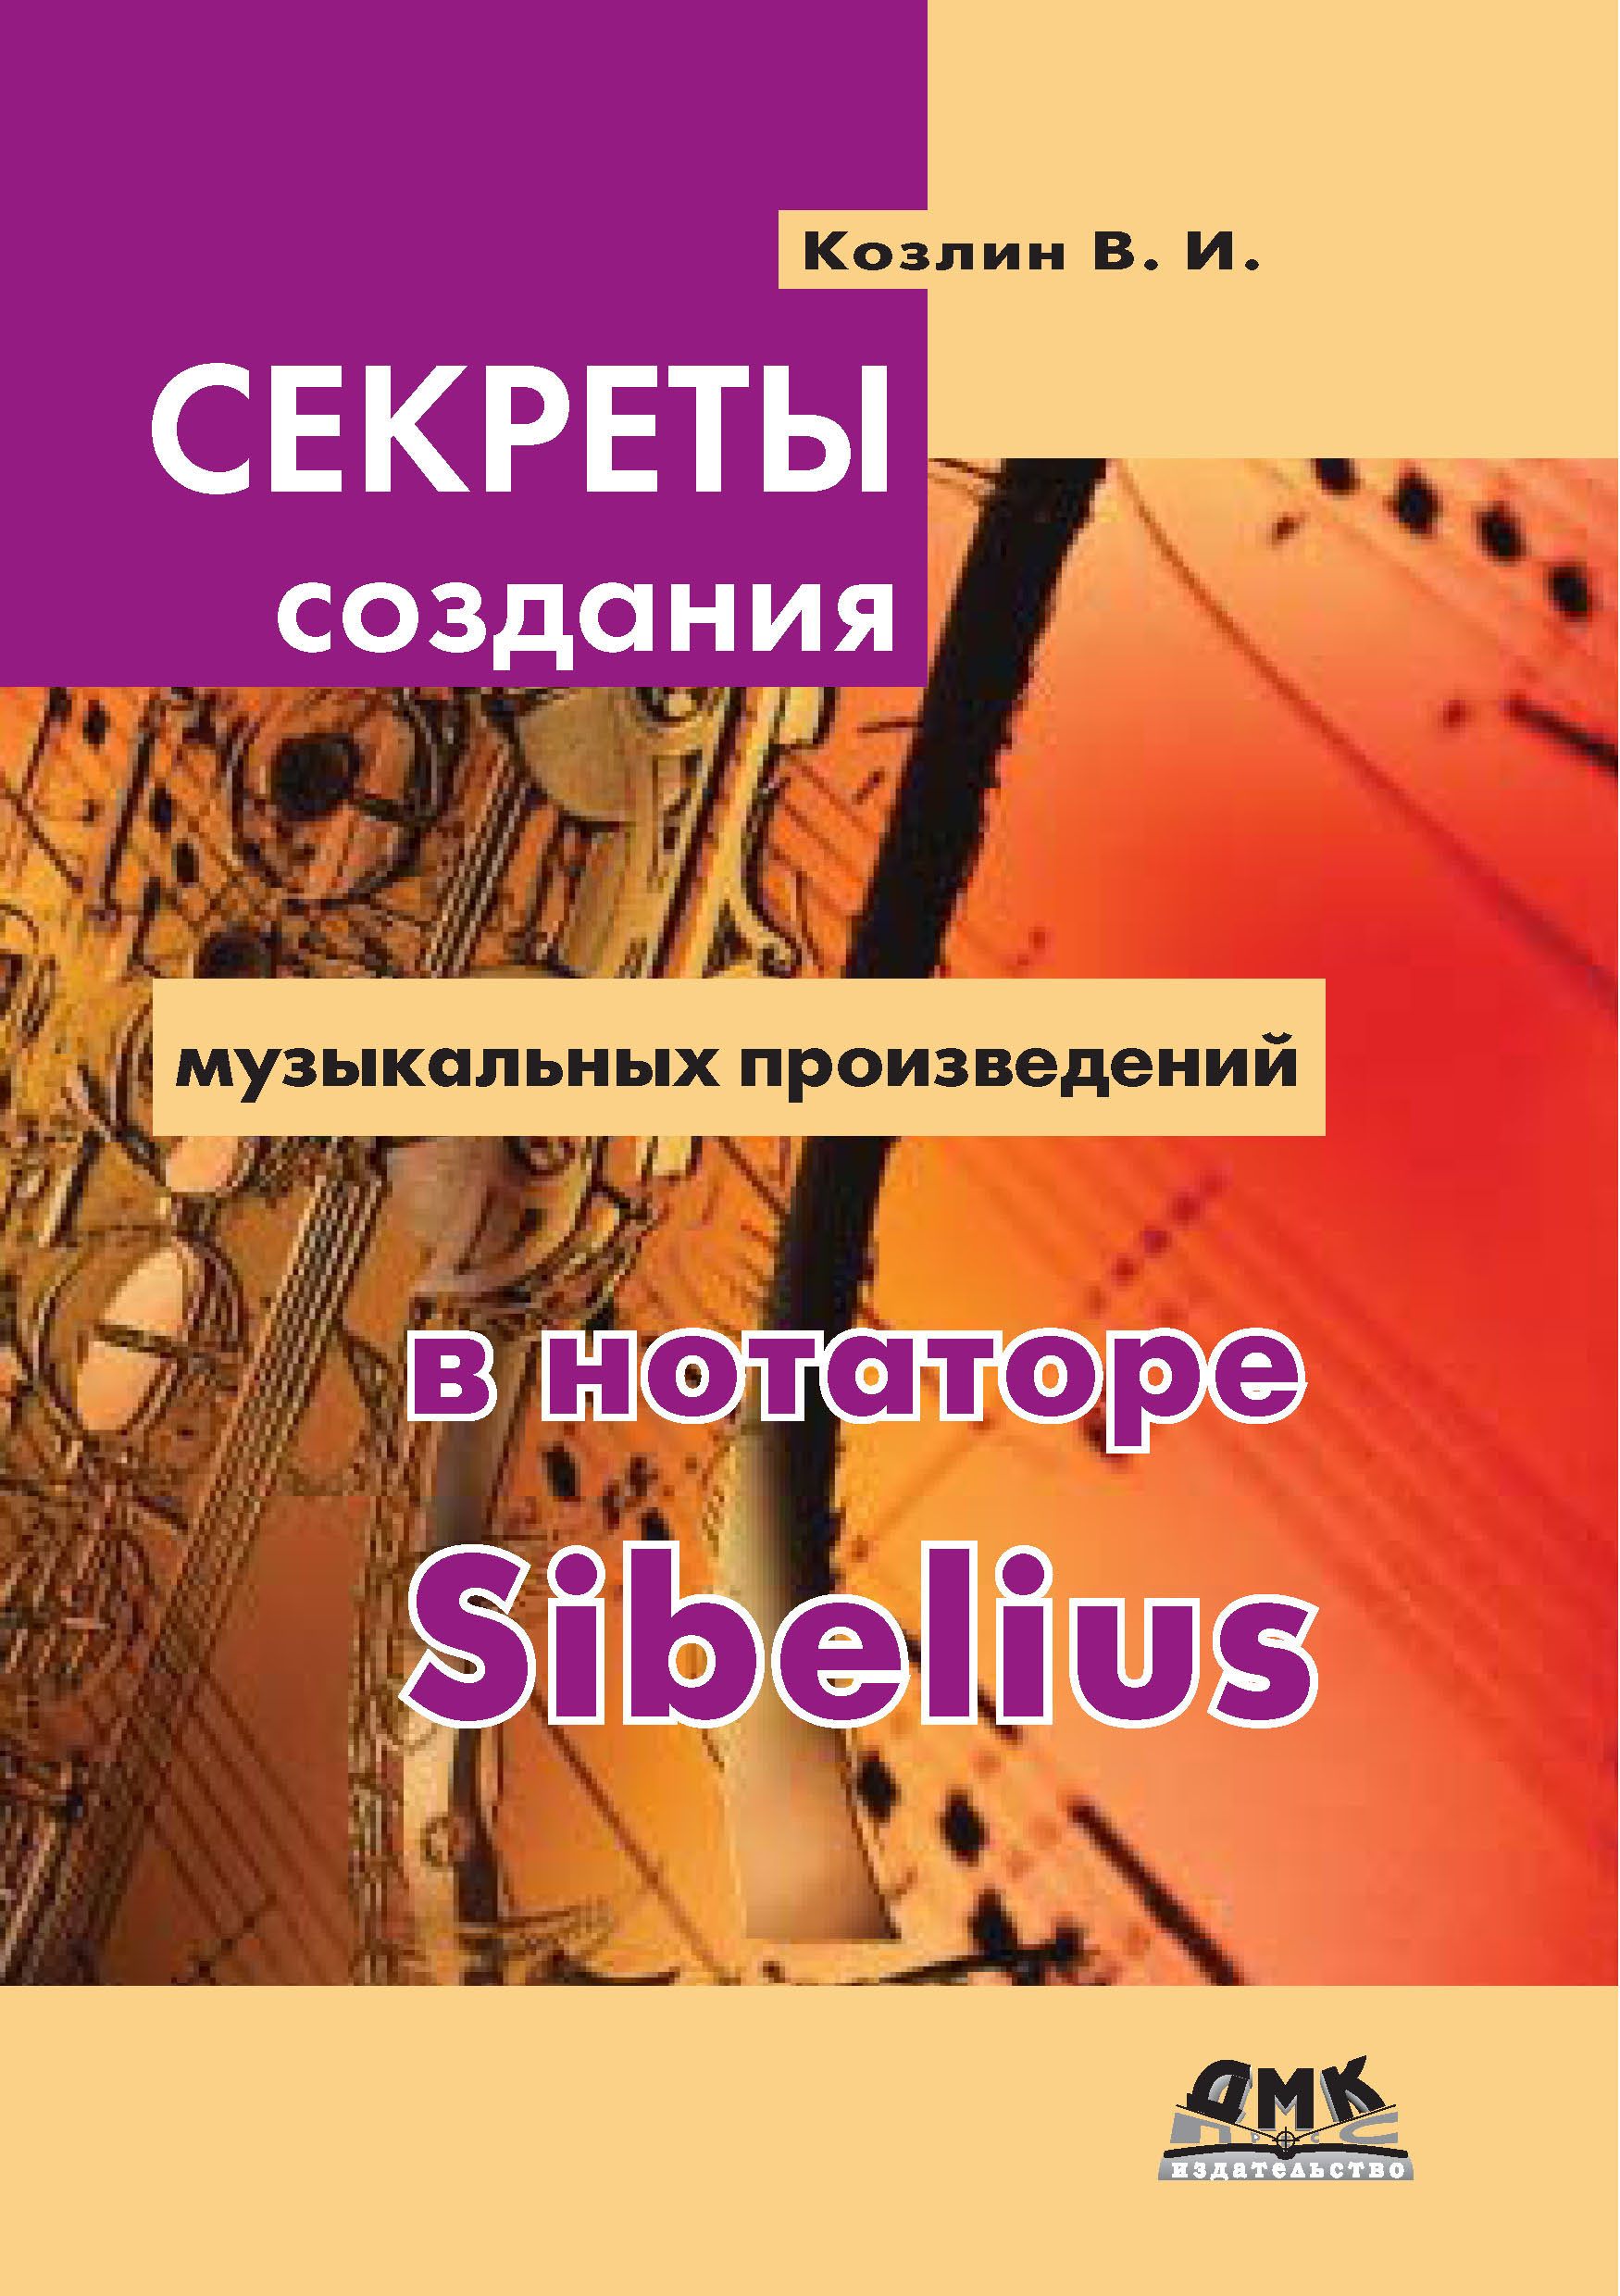 Книга  Секреты создания музыкальных произведений в нотаторе Sibelius созданная В. И. Козлин может относится к жанру музыка, программы, руководства. Стоимость электронной книги Секреты создания музыкальных произведений в нотаторе Sibelius с идентификатором 22075381 составляет 319.00 руб.